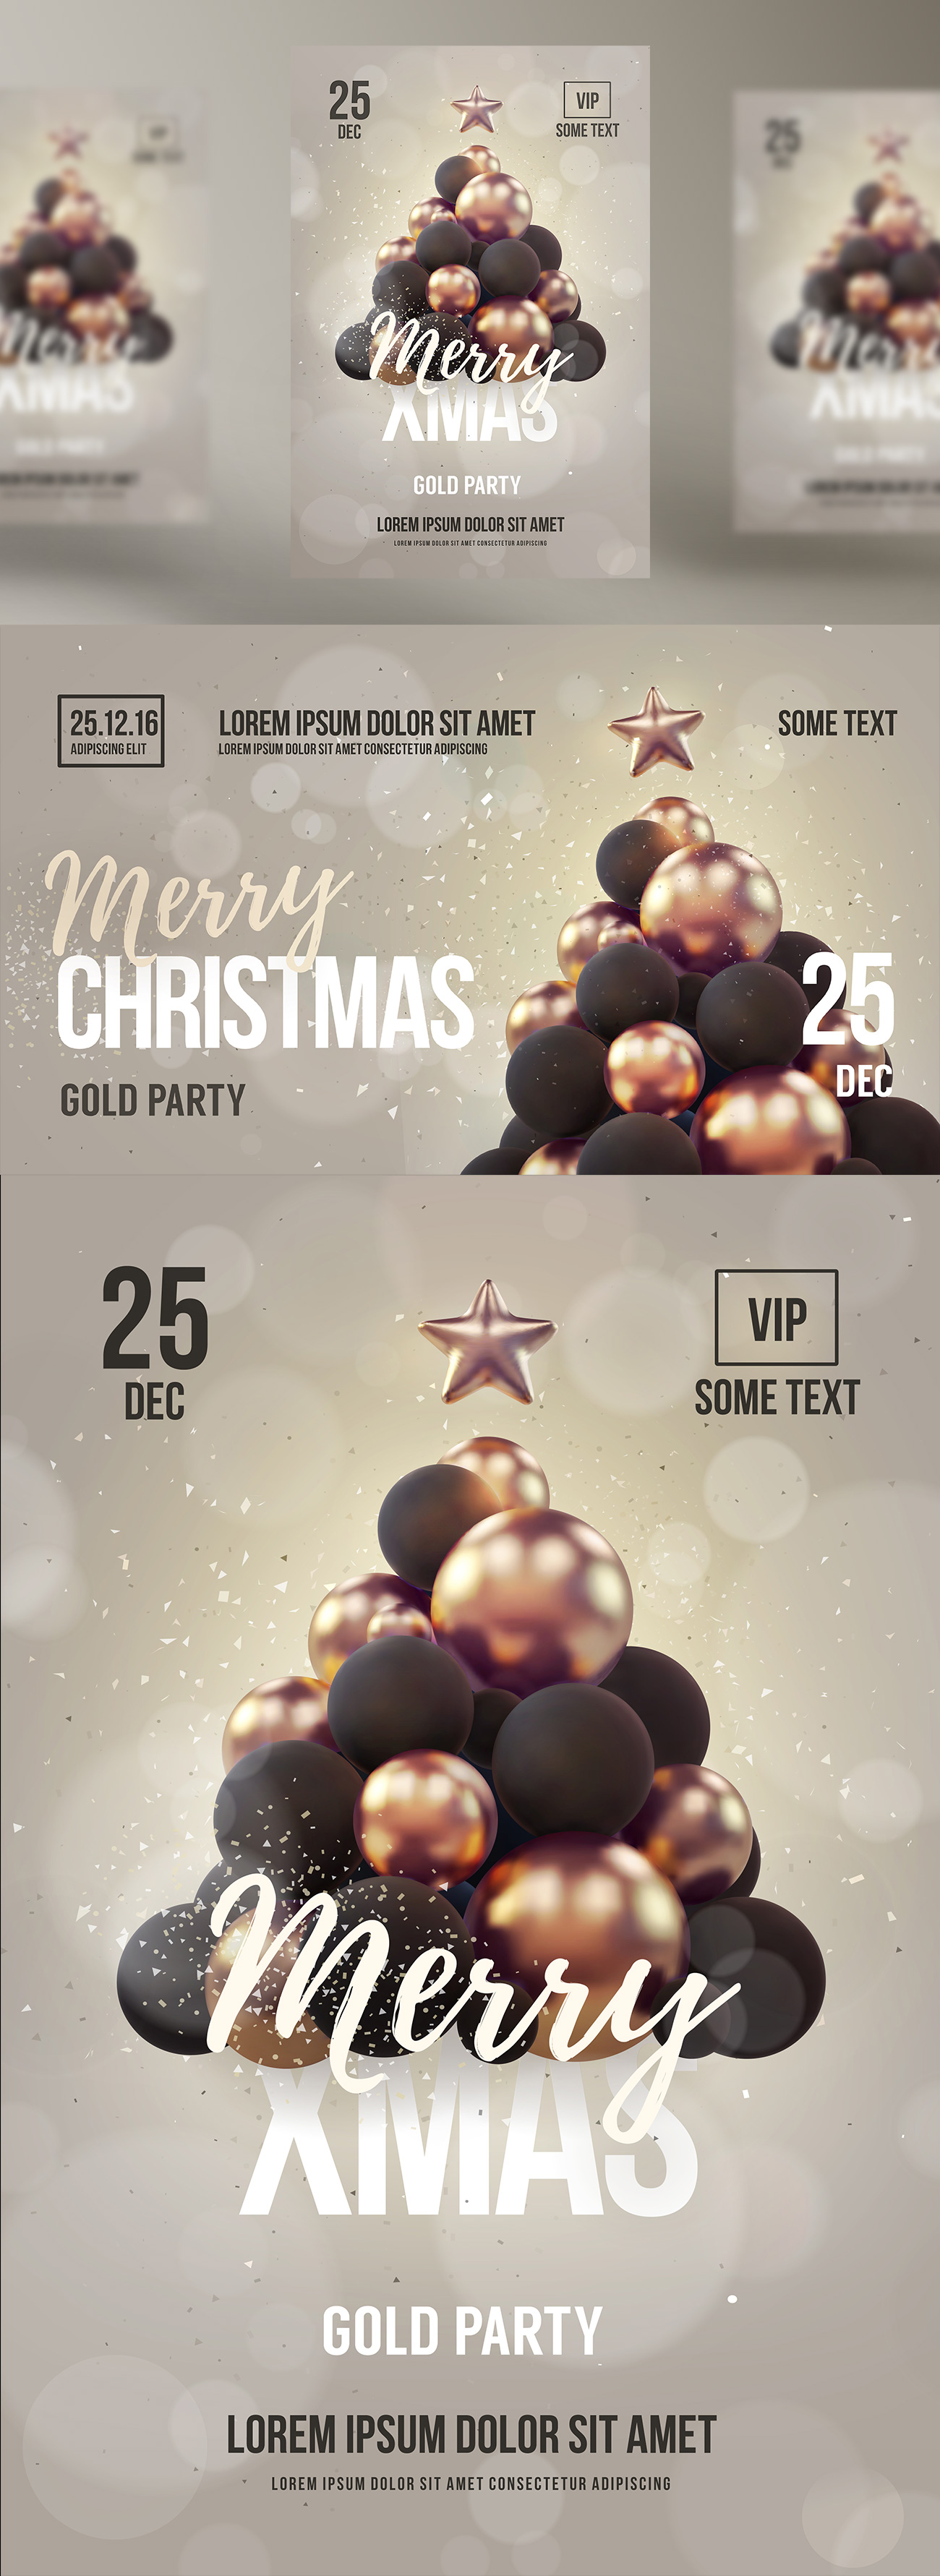 金色圣诞树的新年圣诞海报派对EPS矢量模板